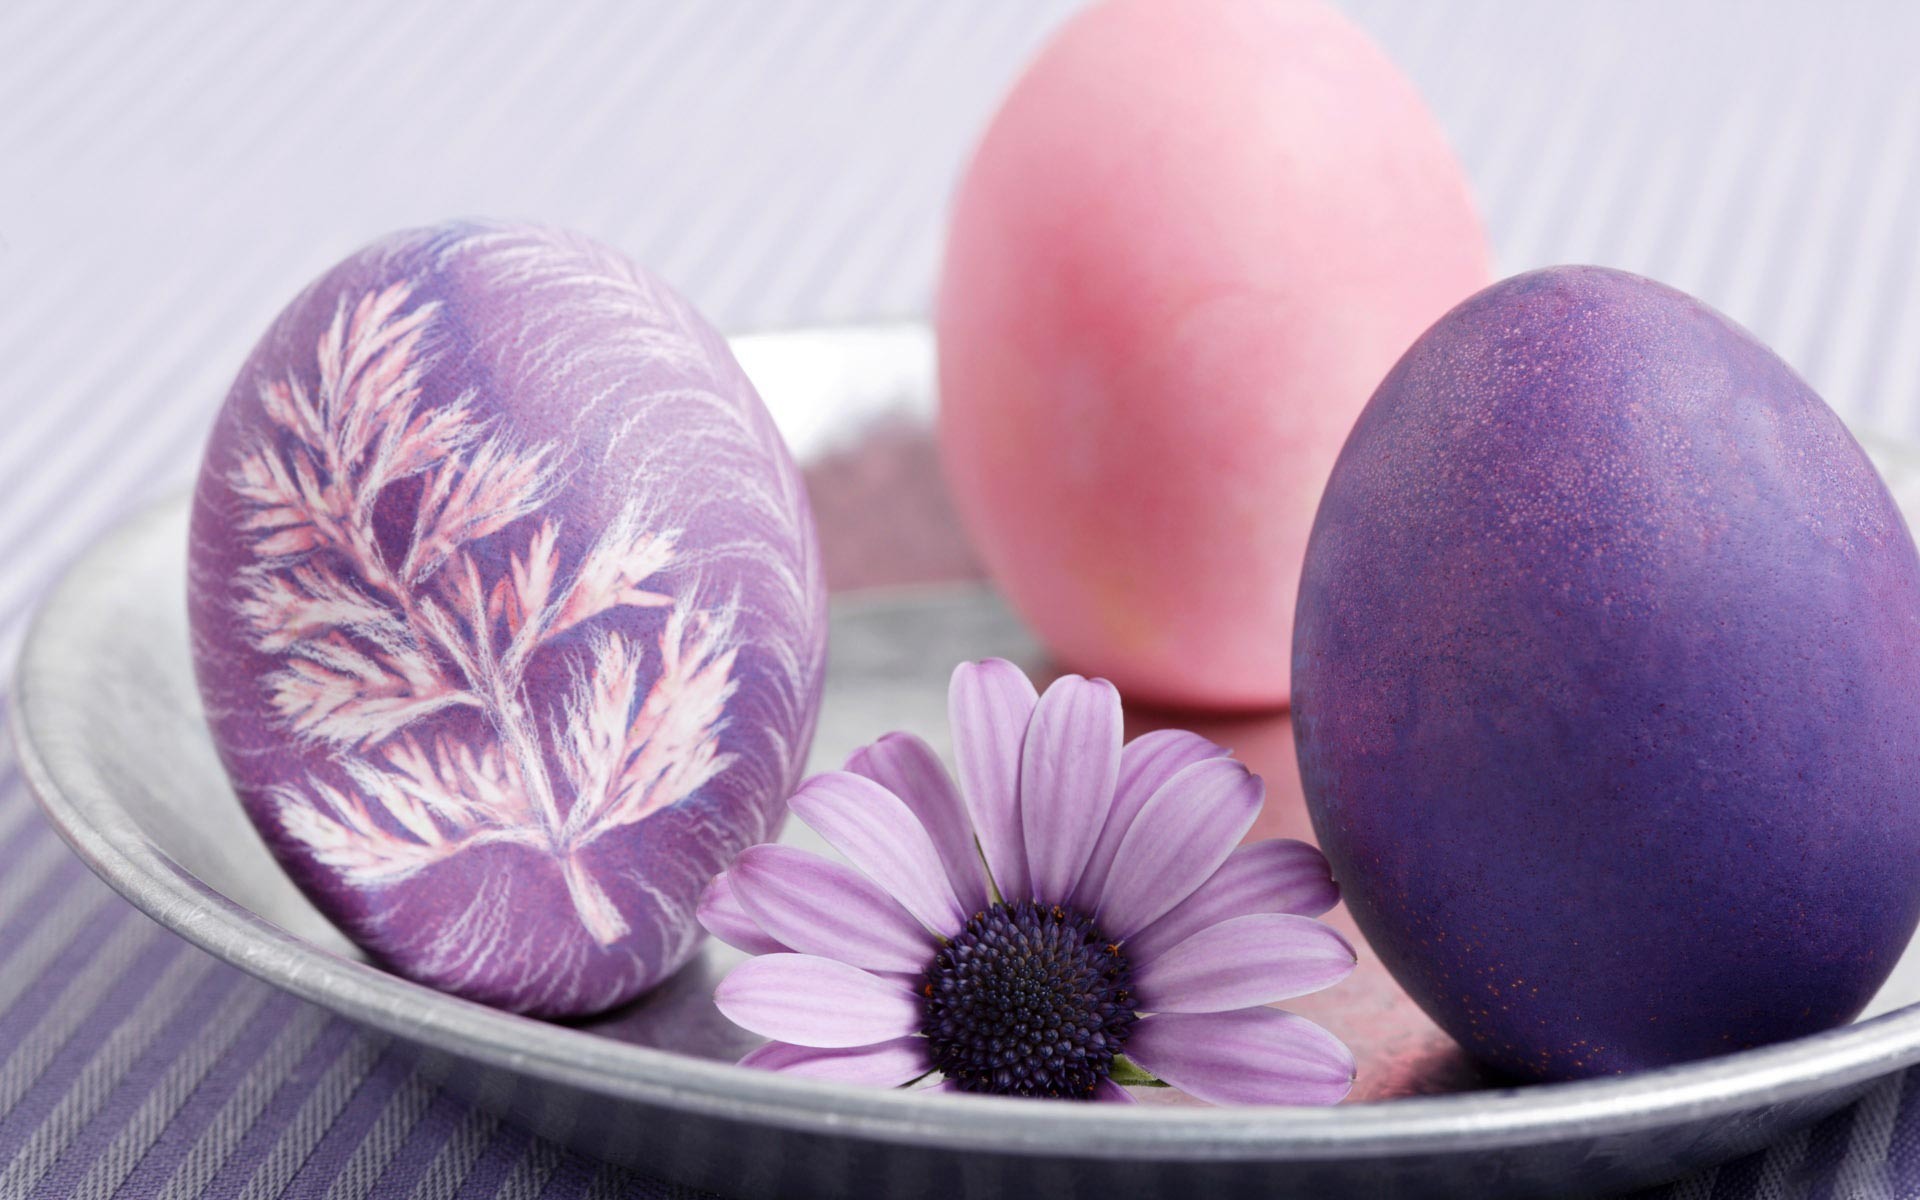 Easter Eggs Desktop Wallpaper